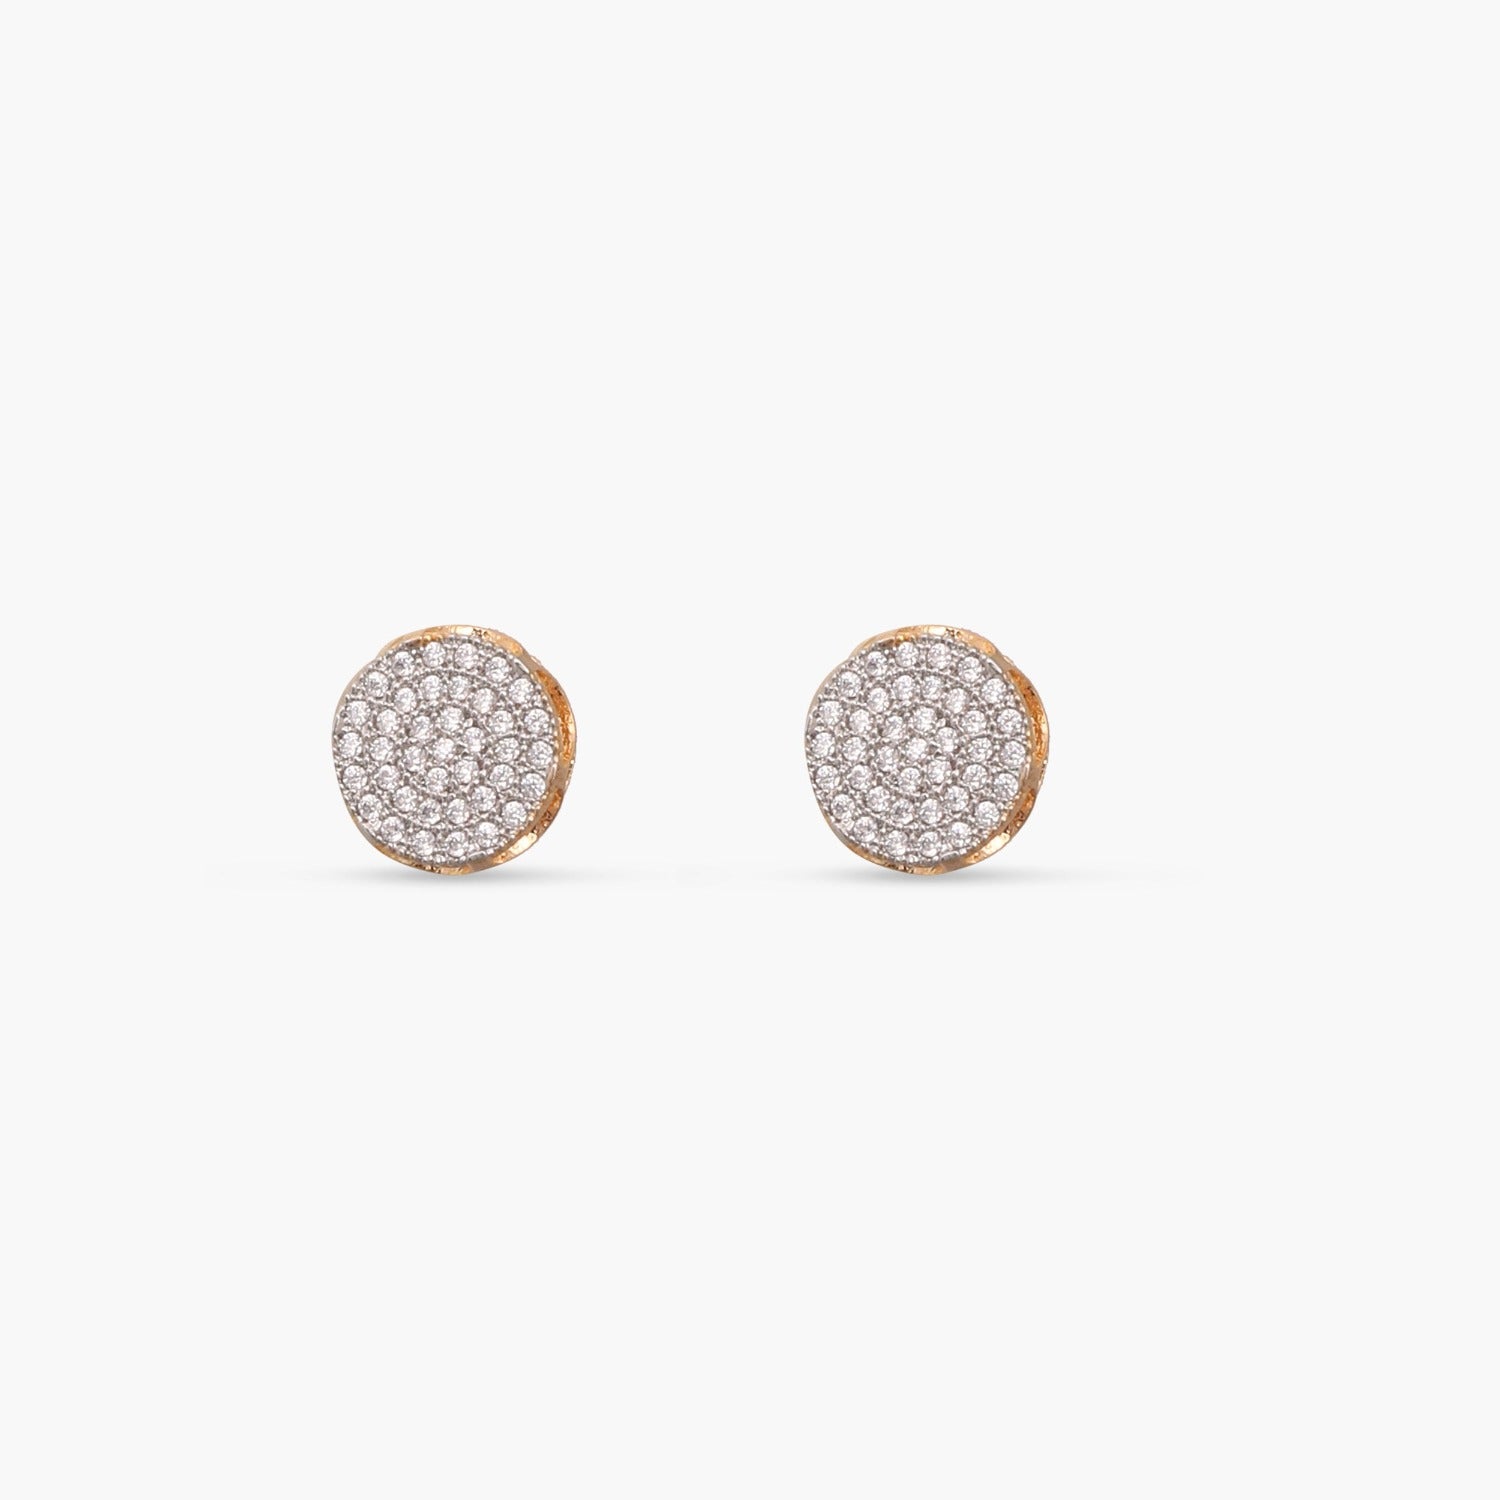 Small Gold Stud Earrings · Tiny GOLD Earrings · Minimal Gold Earrings ·  Simple Stud Earrings · Gold Bar Earrings